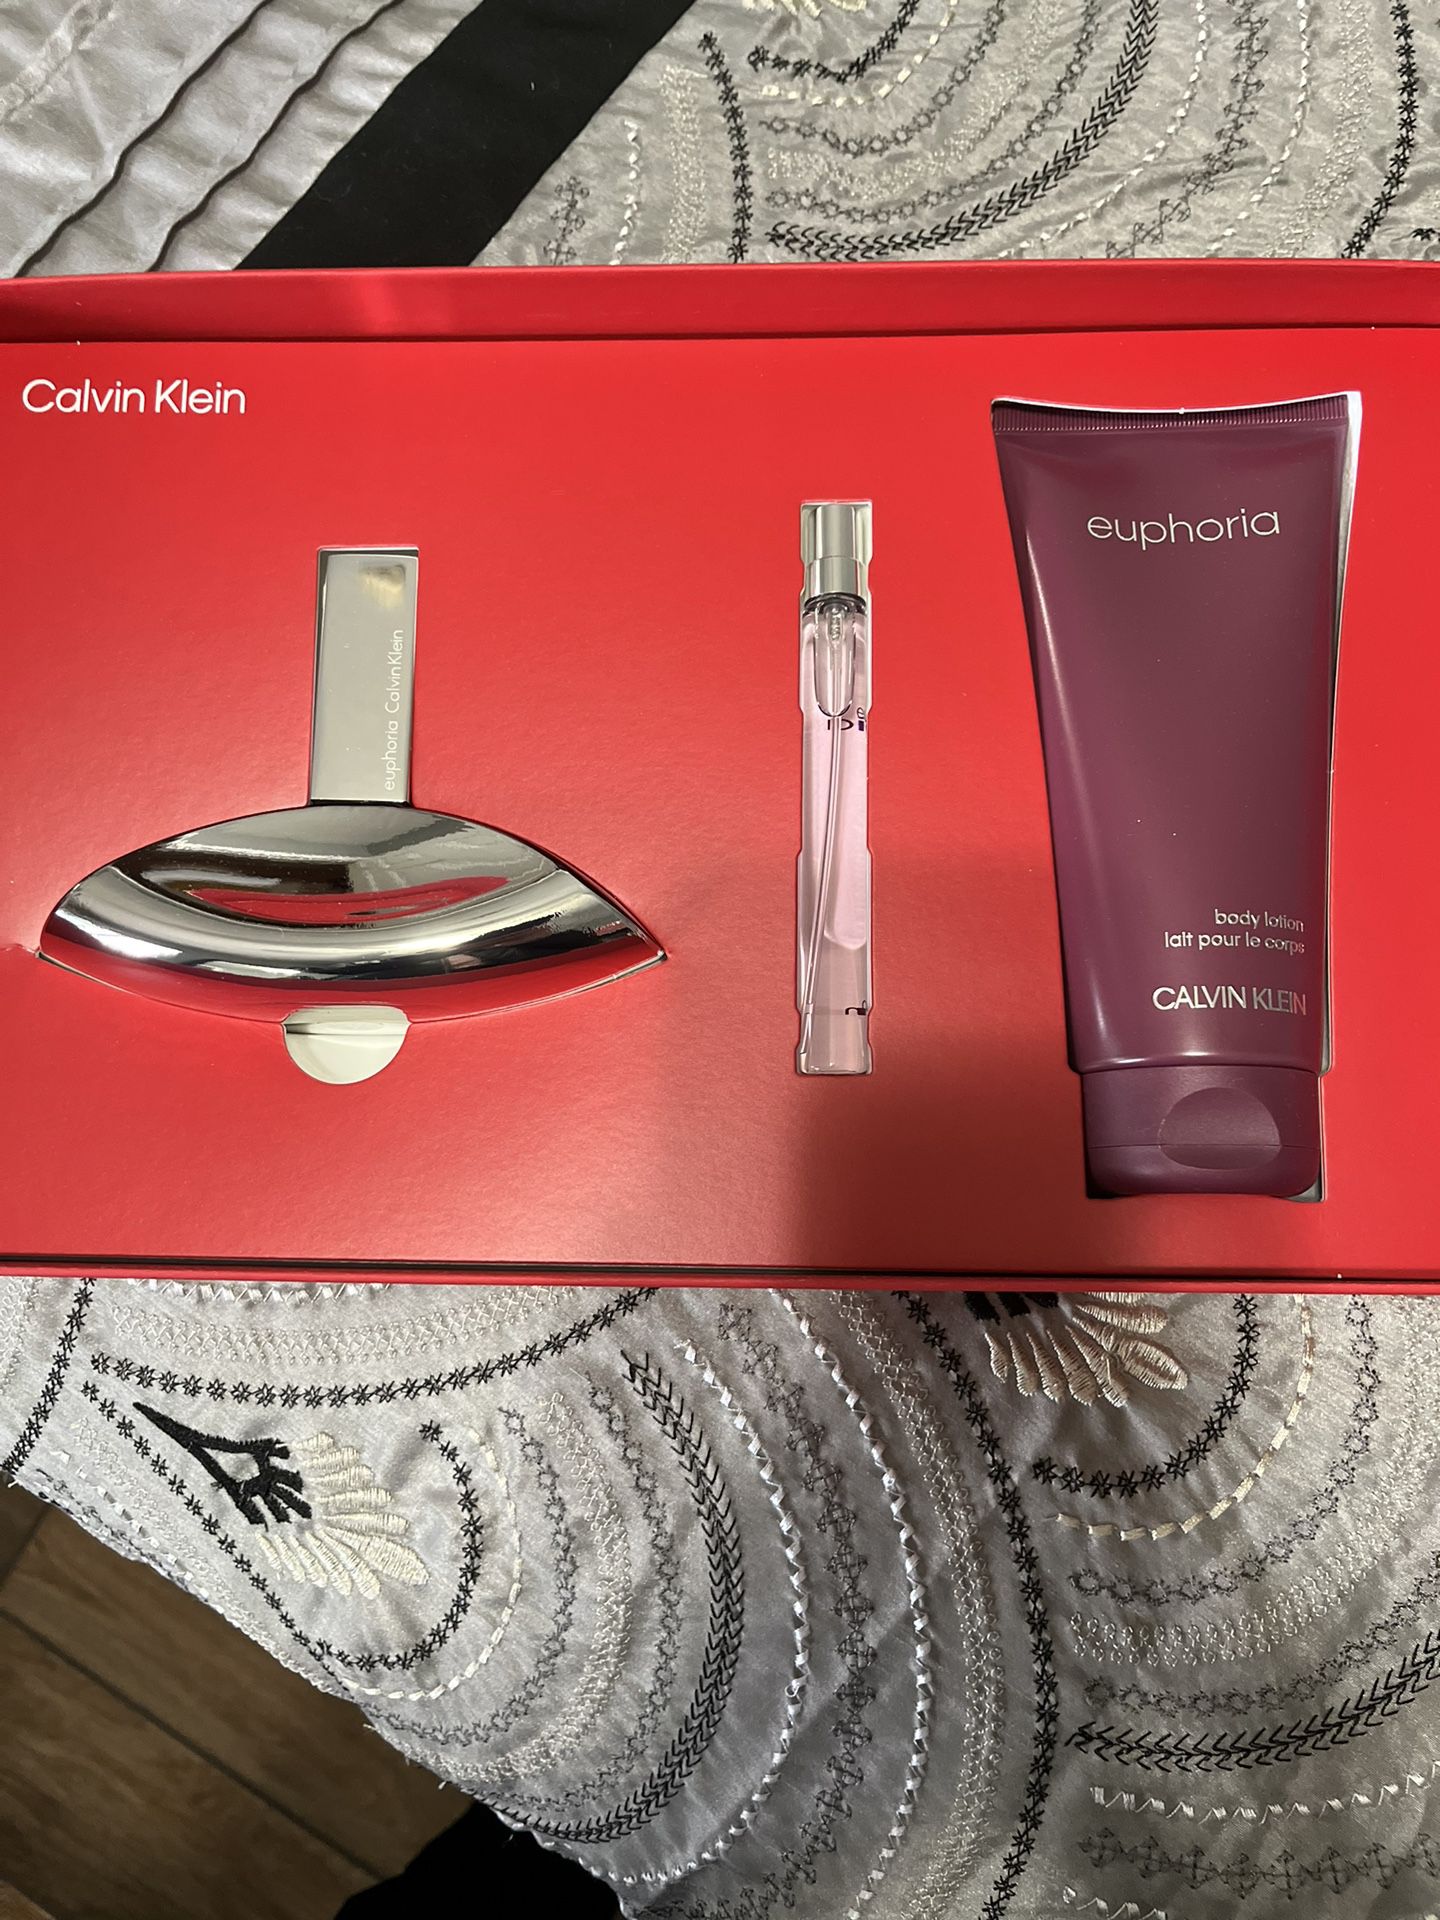 Euphoria Perfume Set By Calvin Klein 